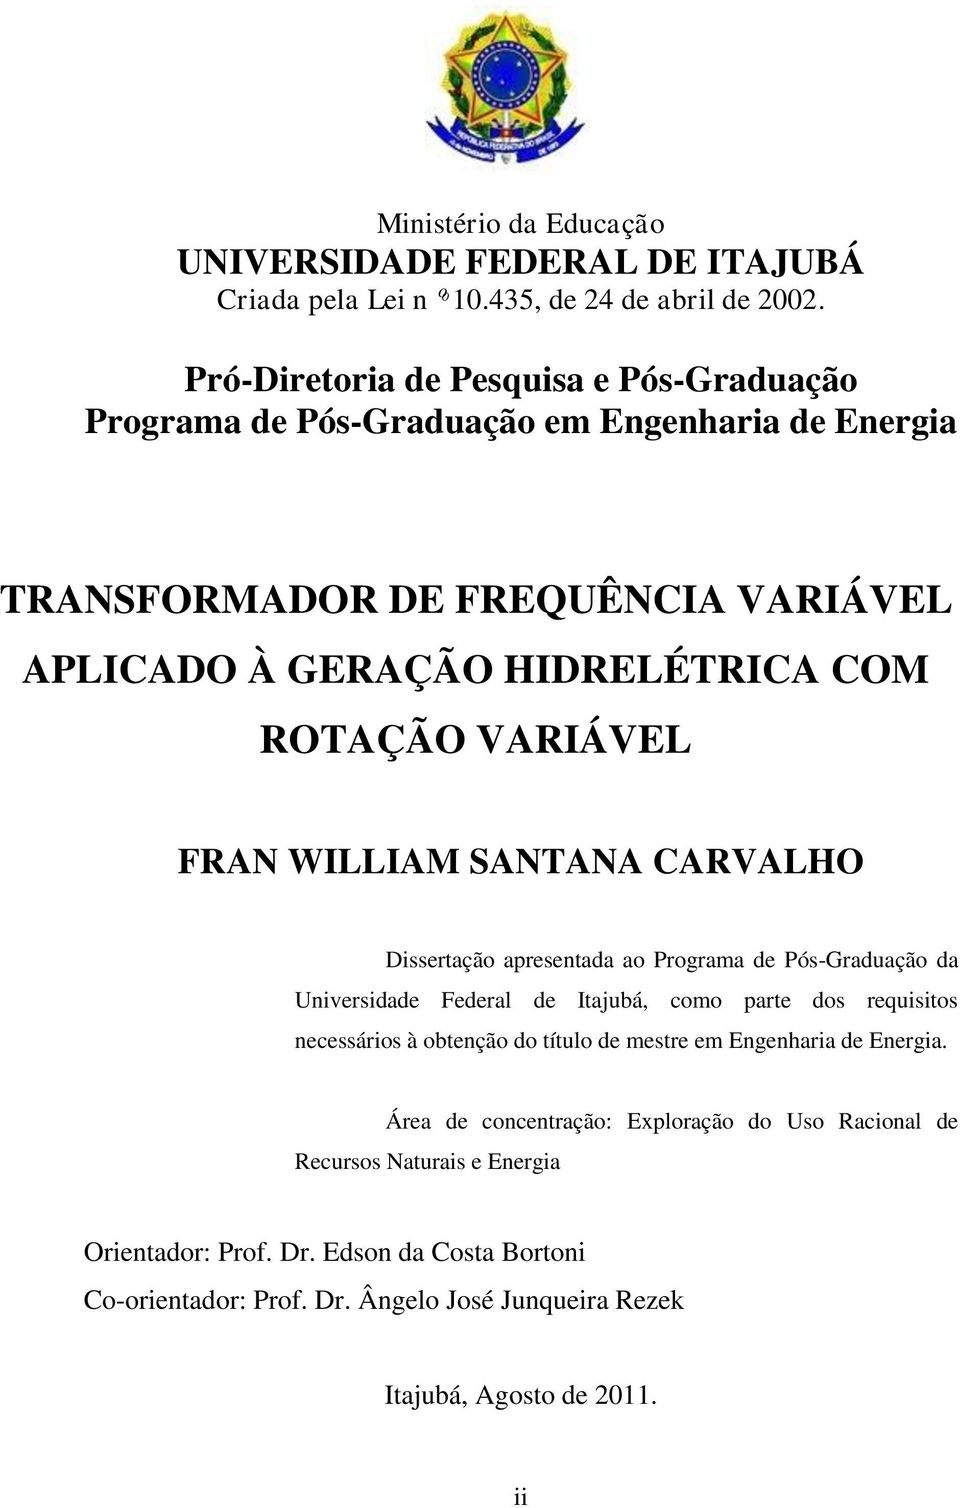 VARIÁVEL FRAN WILLIAM SANTANA CARVALHO Dissertação apresentada ao Programa de Pós-Graduação da Universidade Federal de Itajubá, como parte dos requisitos necessários à obtenção